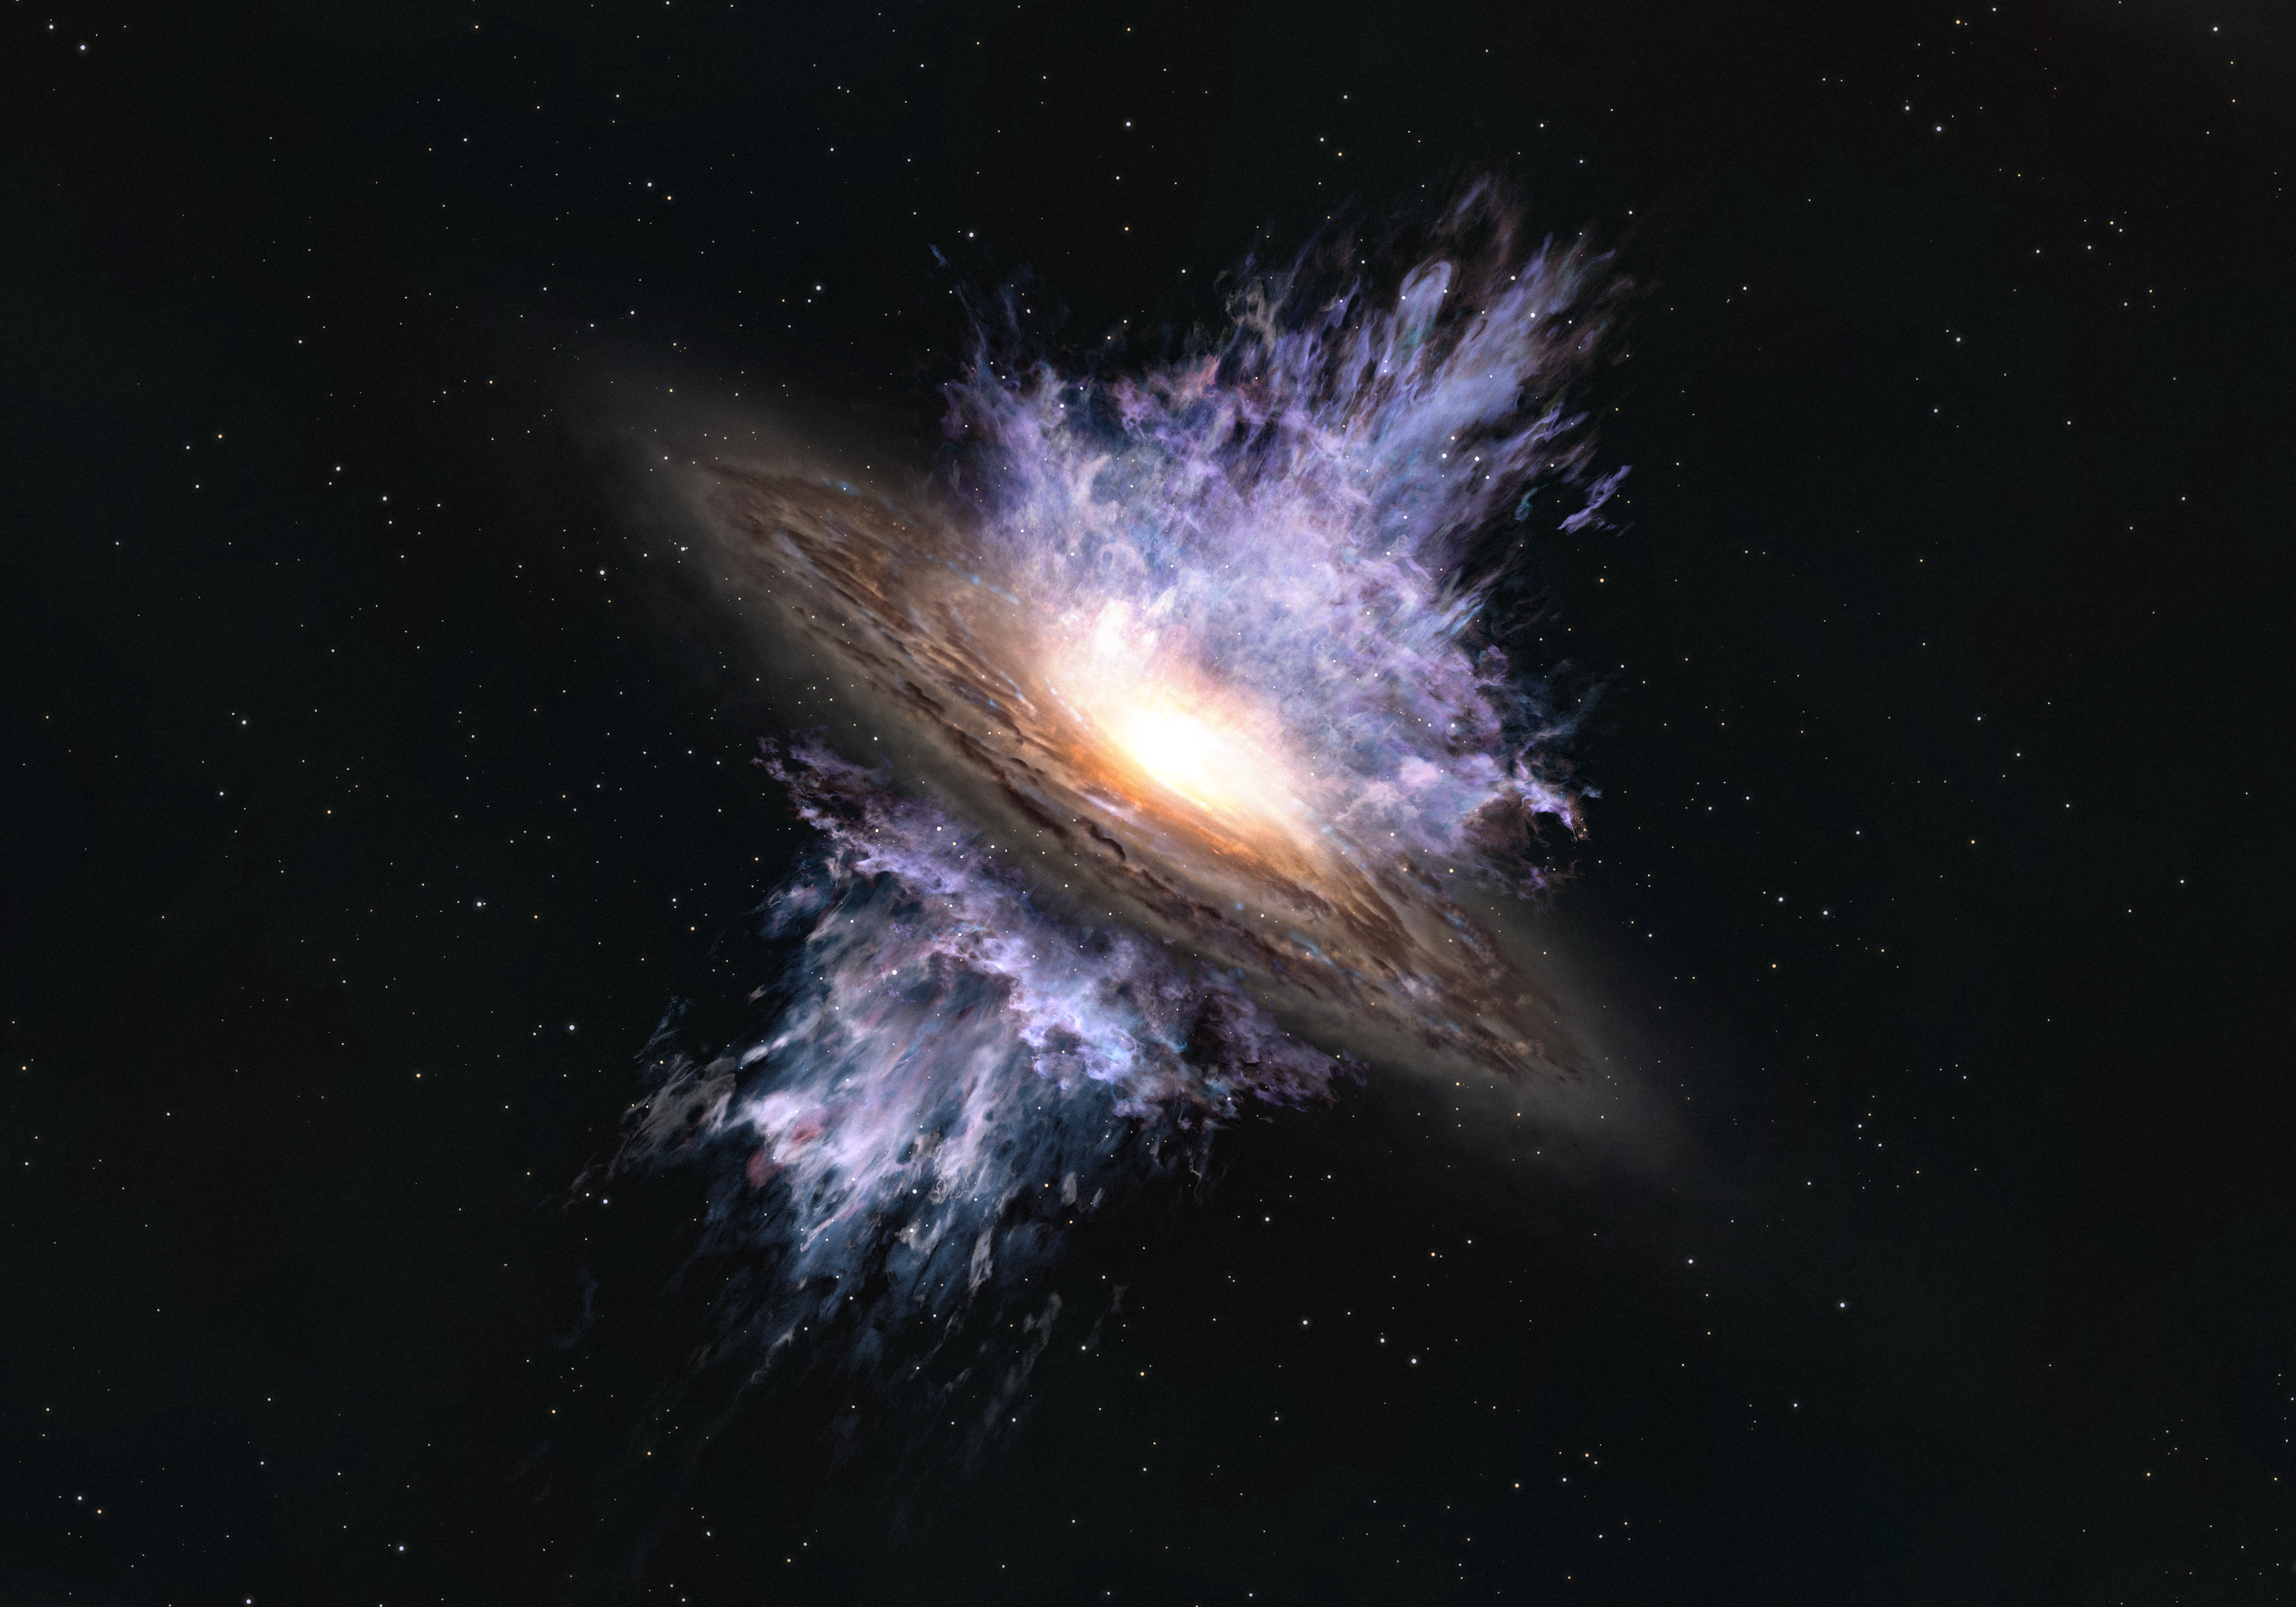 Interpretación artística de un viento galáctico impulsado por un agujero negro supermasivo ubicado en el centro de una galaxia. La intensa energía que emana del agujero negro crea un flujo de gas a escala galáctica que expulsa la materia interestelar que es el material para la formación de estrellas. Crédito: ALMA (ESO / NAOJ / NRAO)